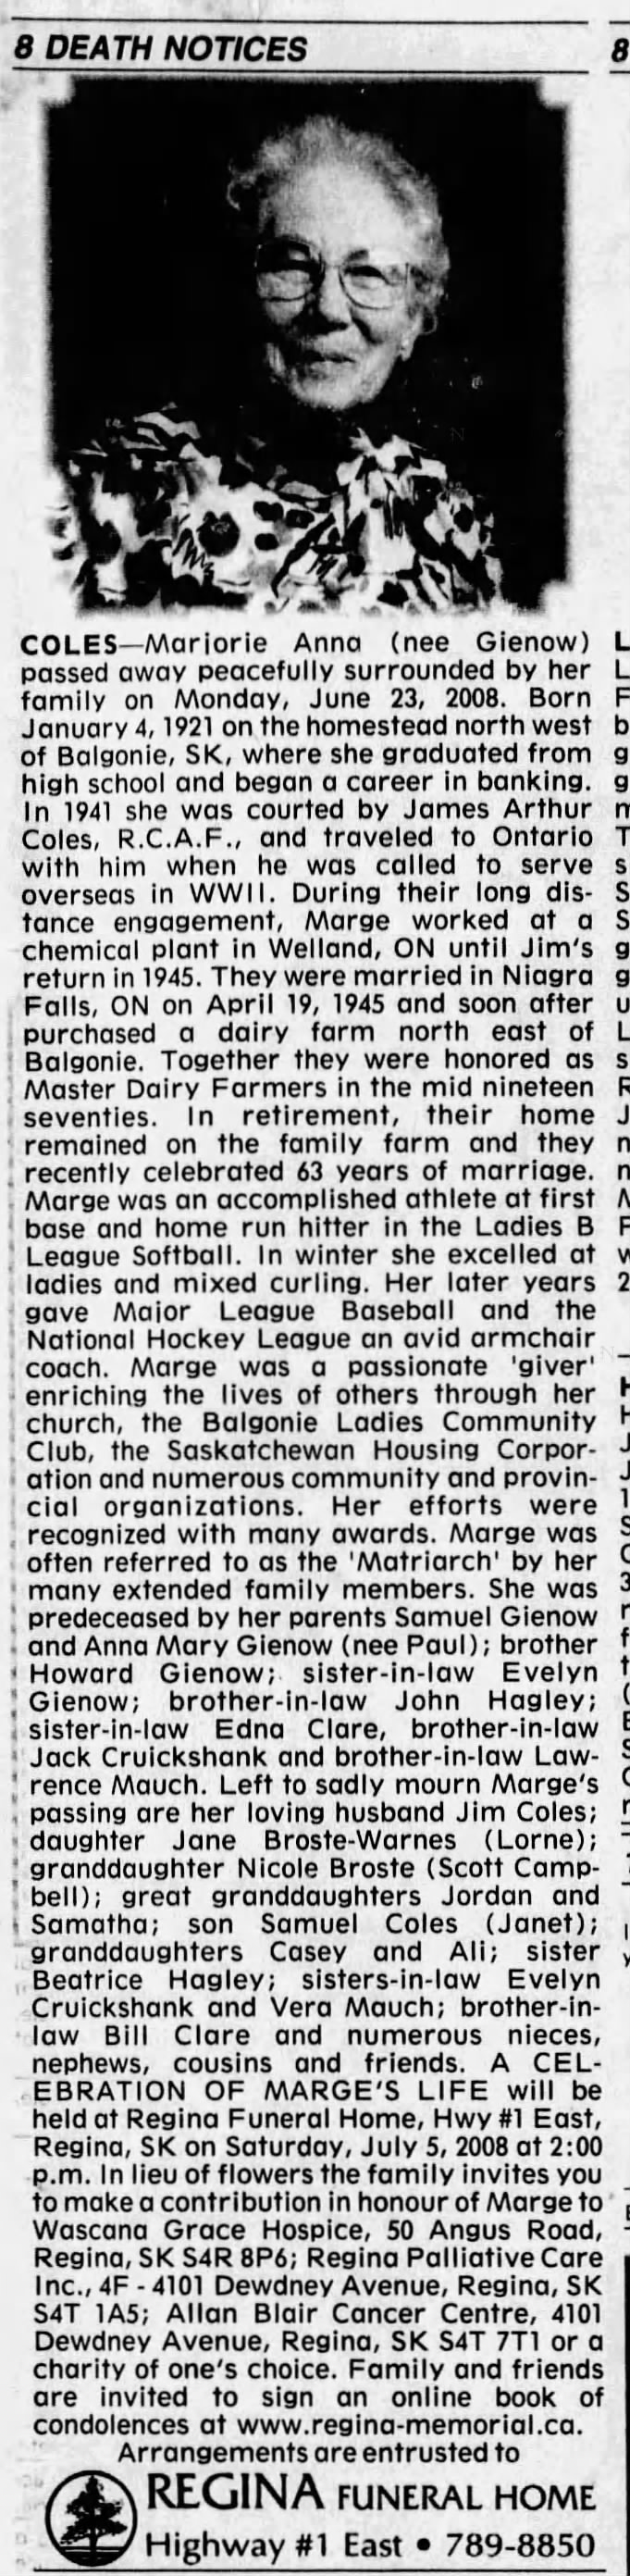 Obituary: Marjorie Anna Coles née Gienow